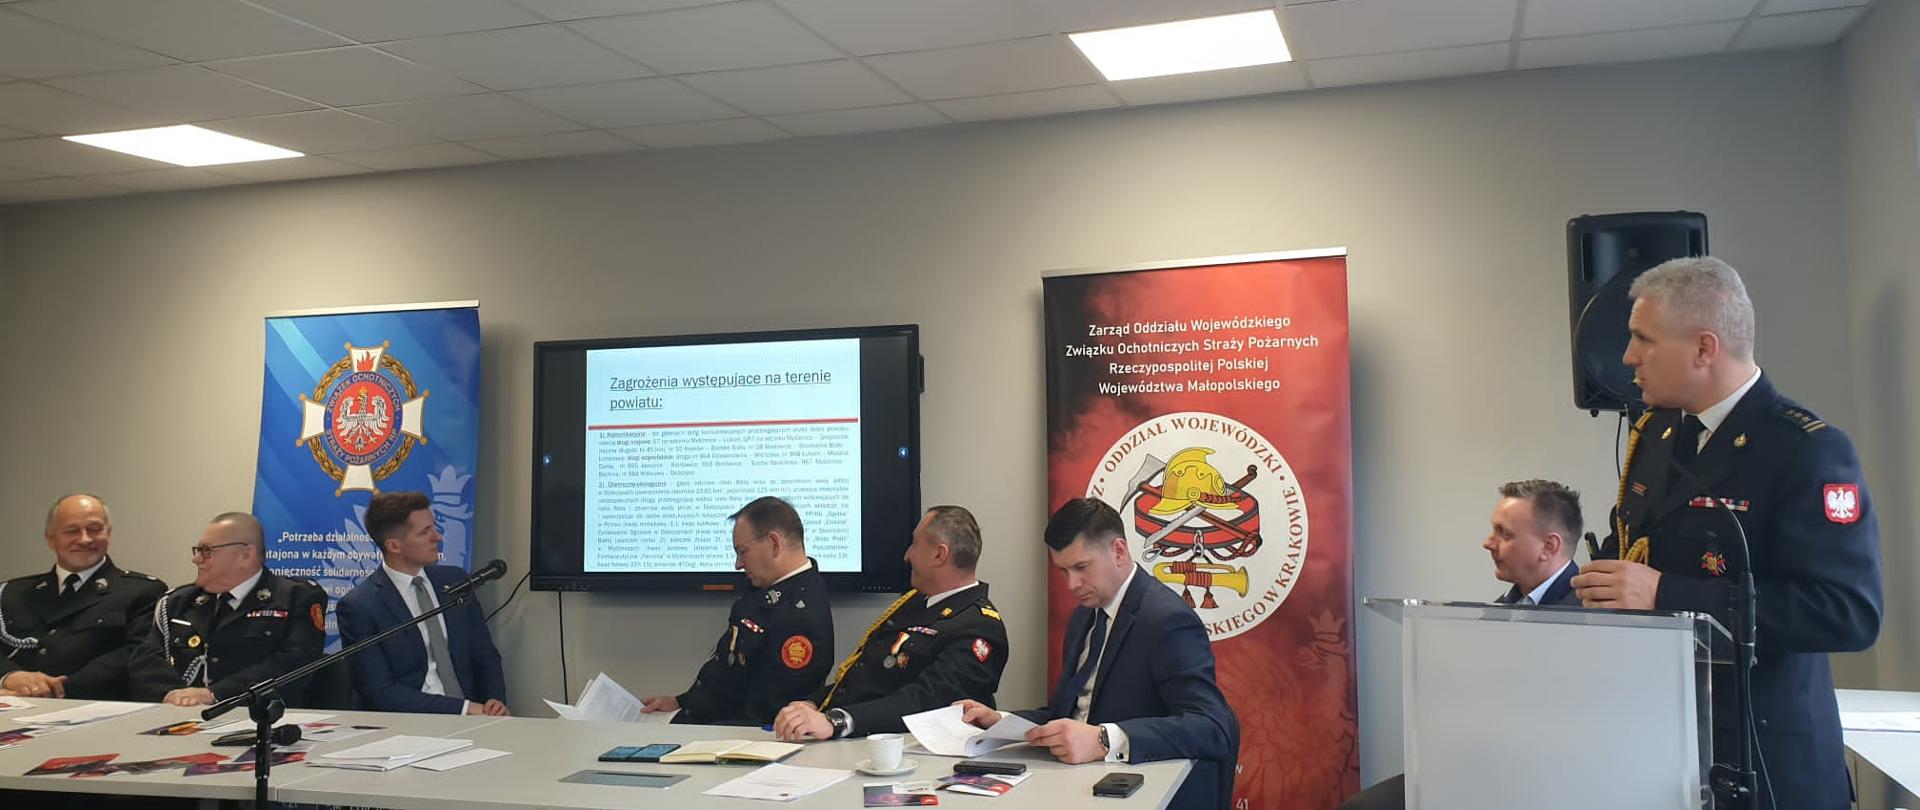 Posiedzenie Zarządu Oddziału Wojewódzkiego Związku Ochotniczych Straży Pożarnych Rzeczypospolitej Polskiej 